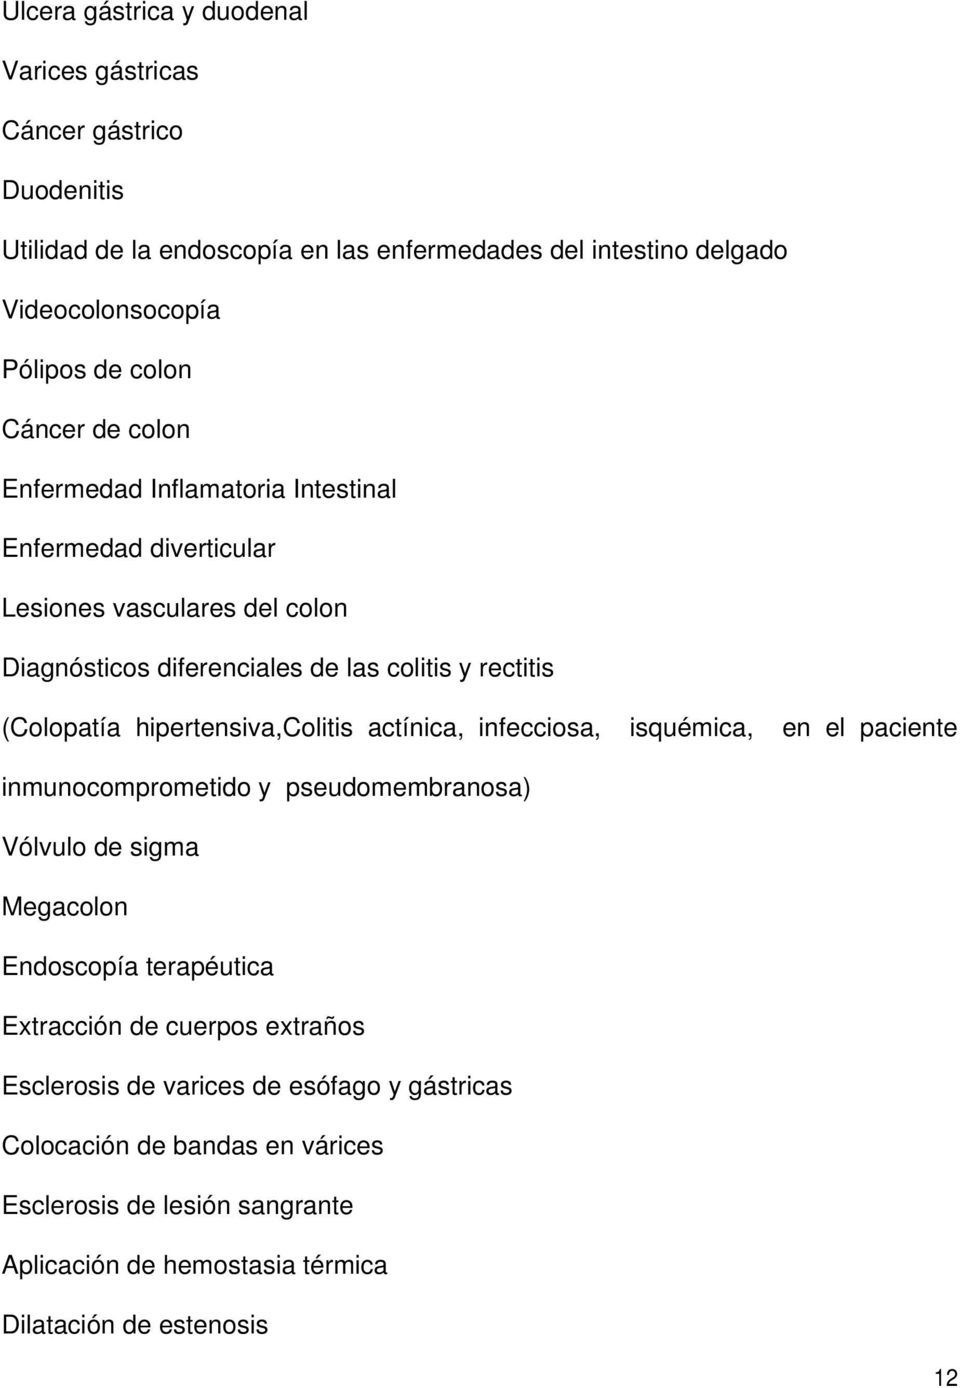 hipertensiva,colitis actínica, infecciosa, isquémica, en el paciente inmunocomprometido y pseudomembranosa) Vólvulo de sigma Megacolon Endoscopía terapéutica Extracción de